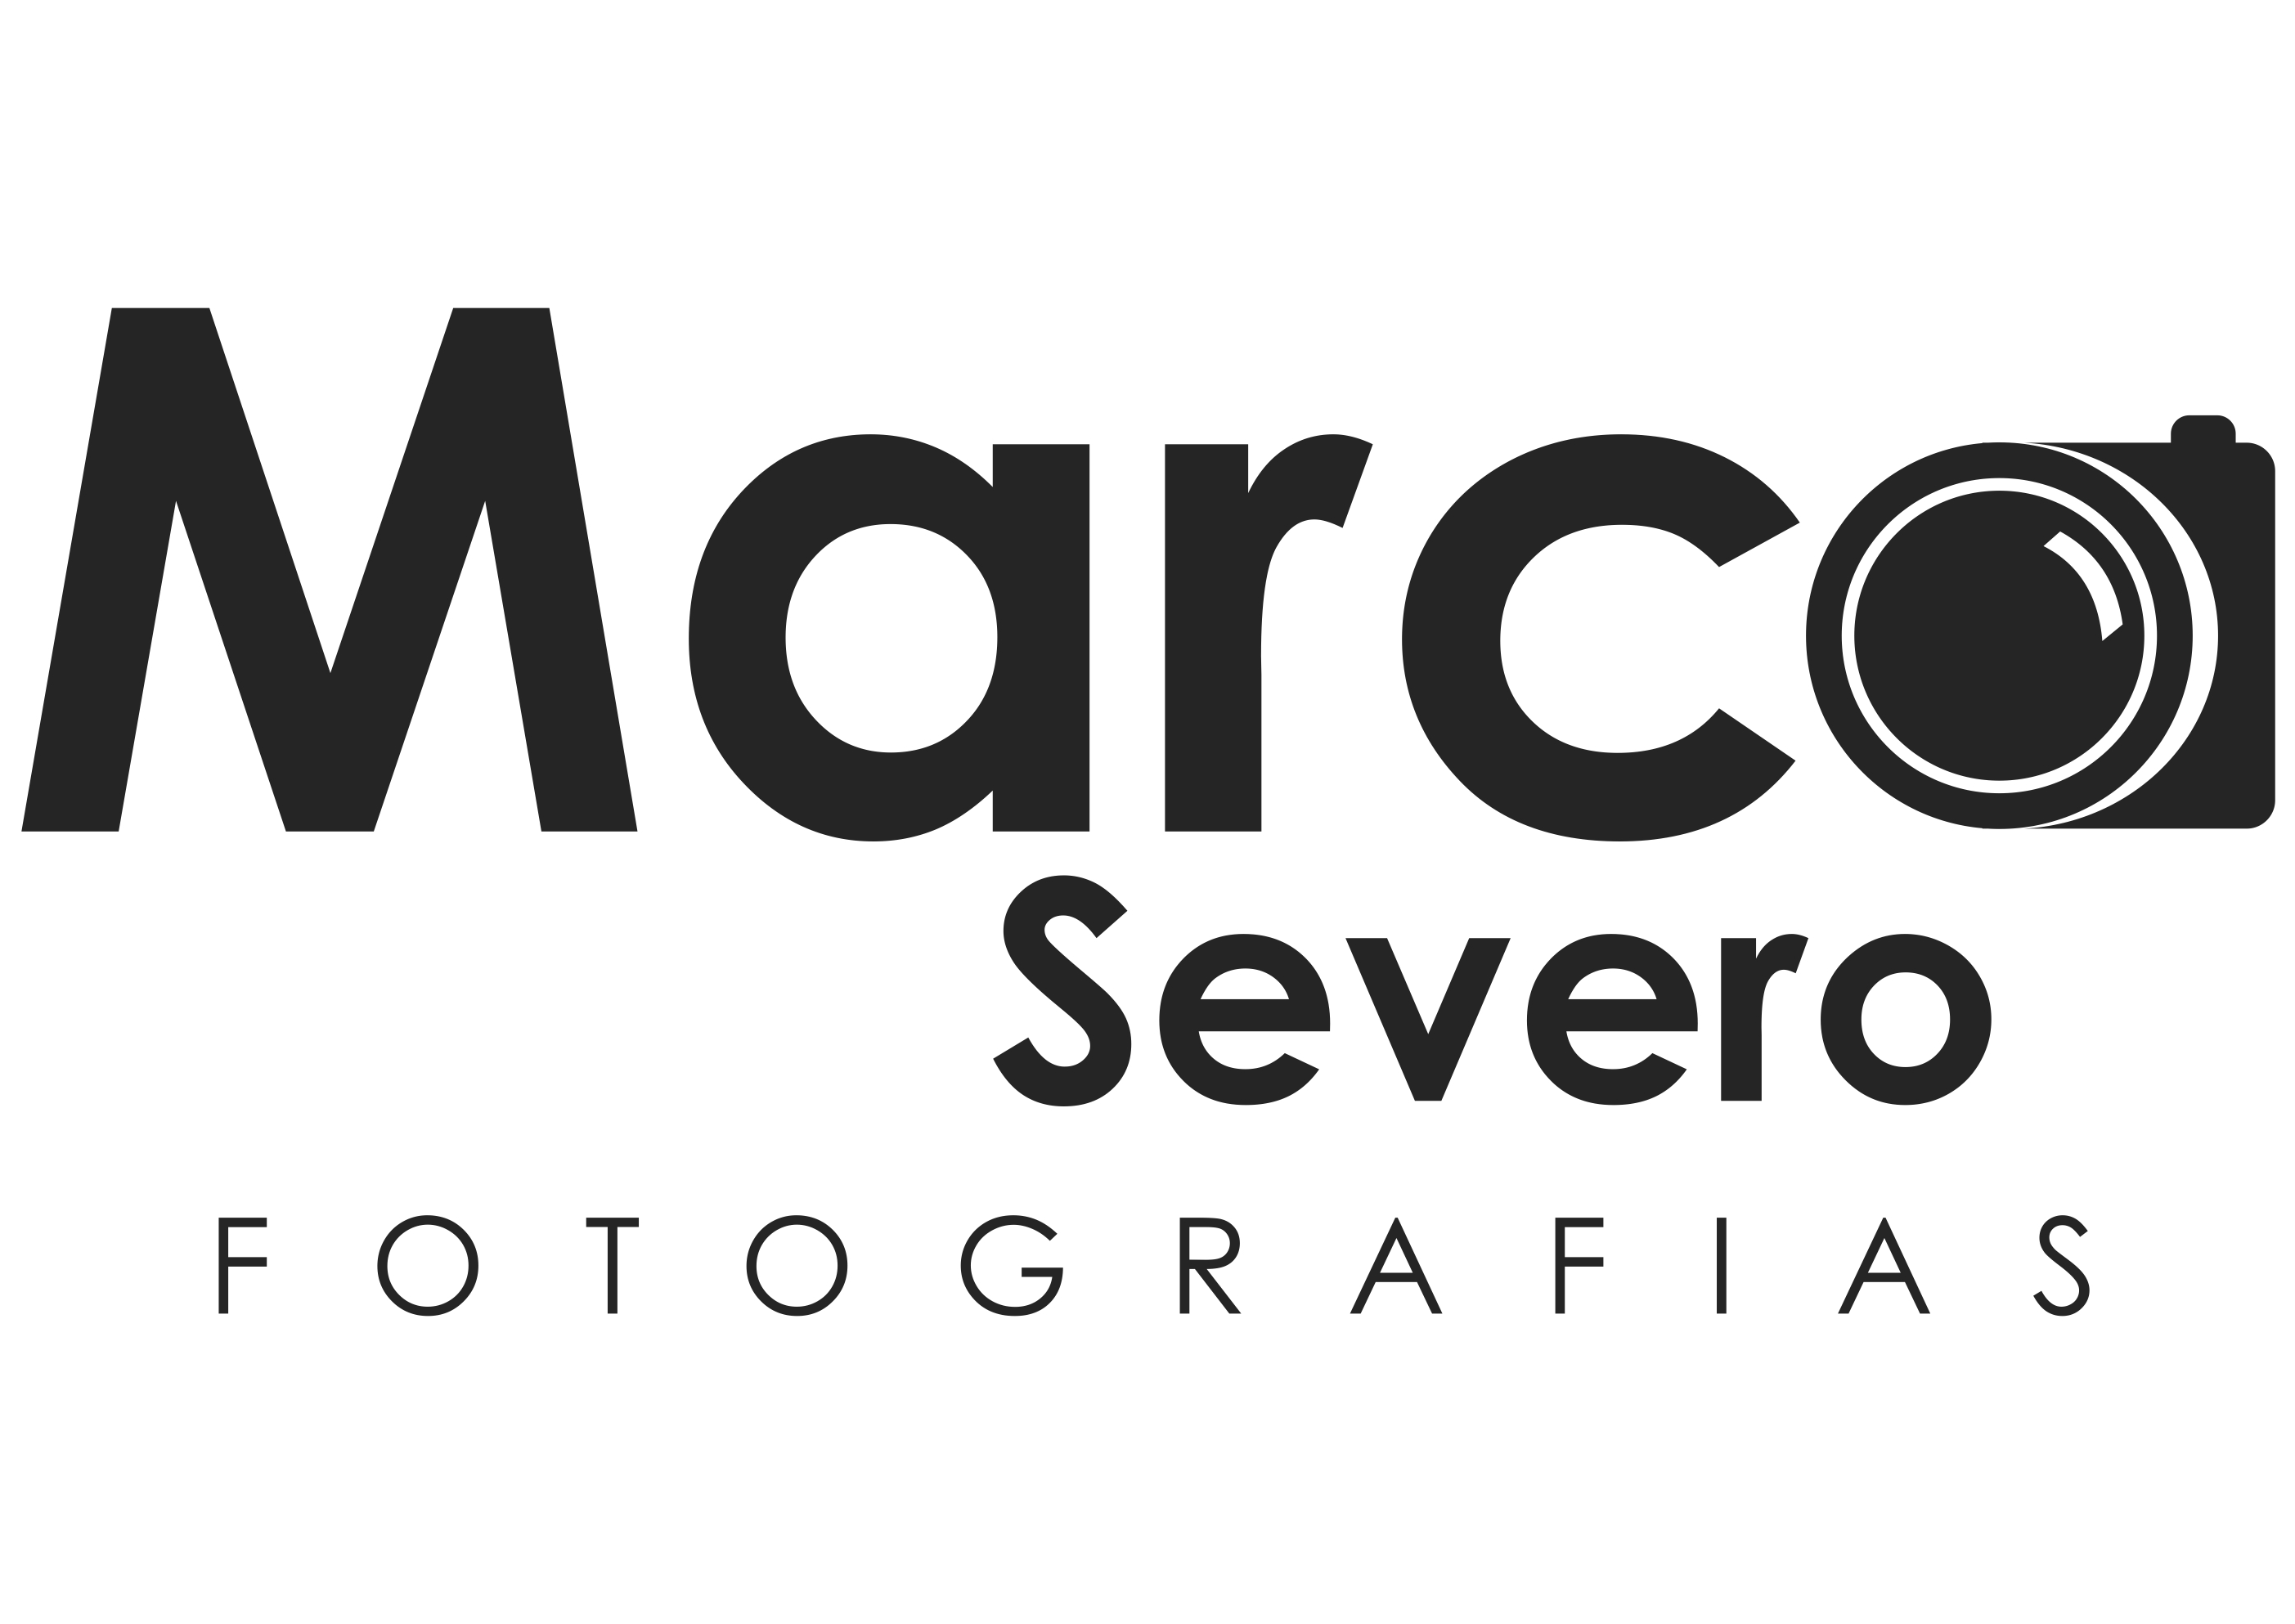 Marco Severo Fotografias 